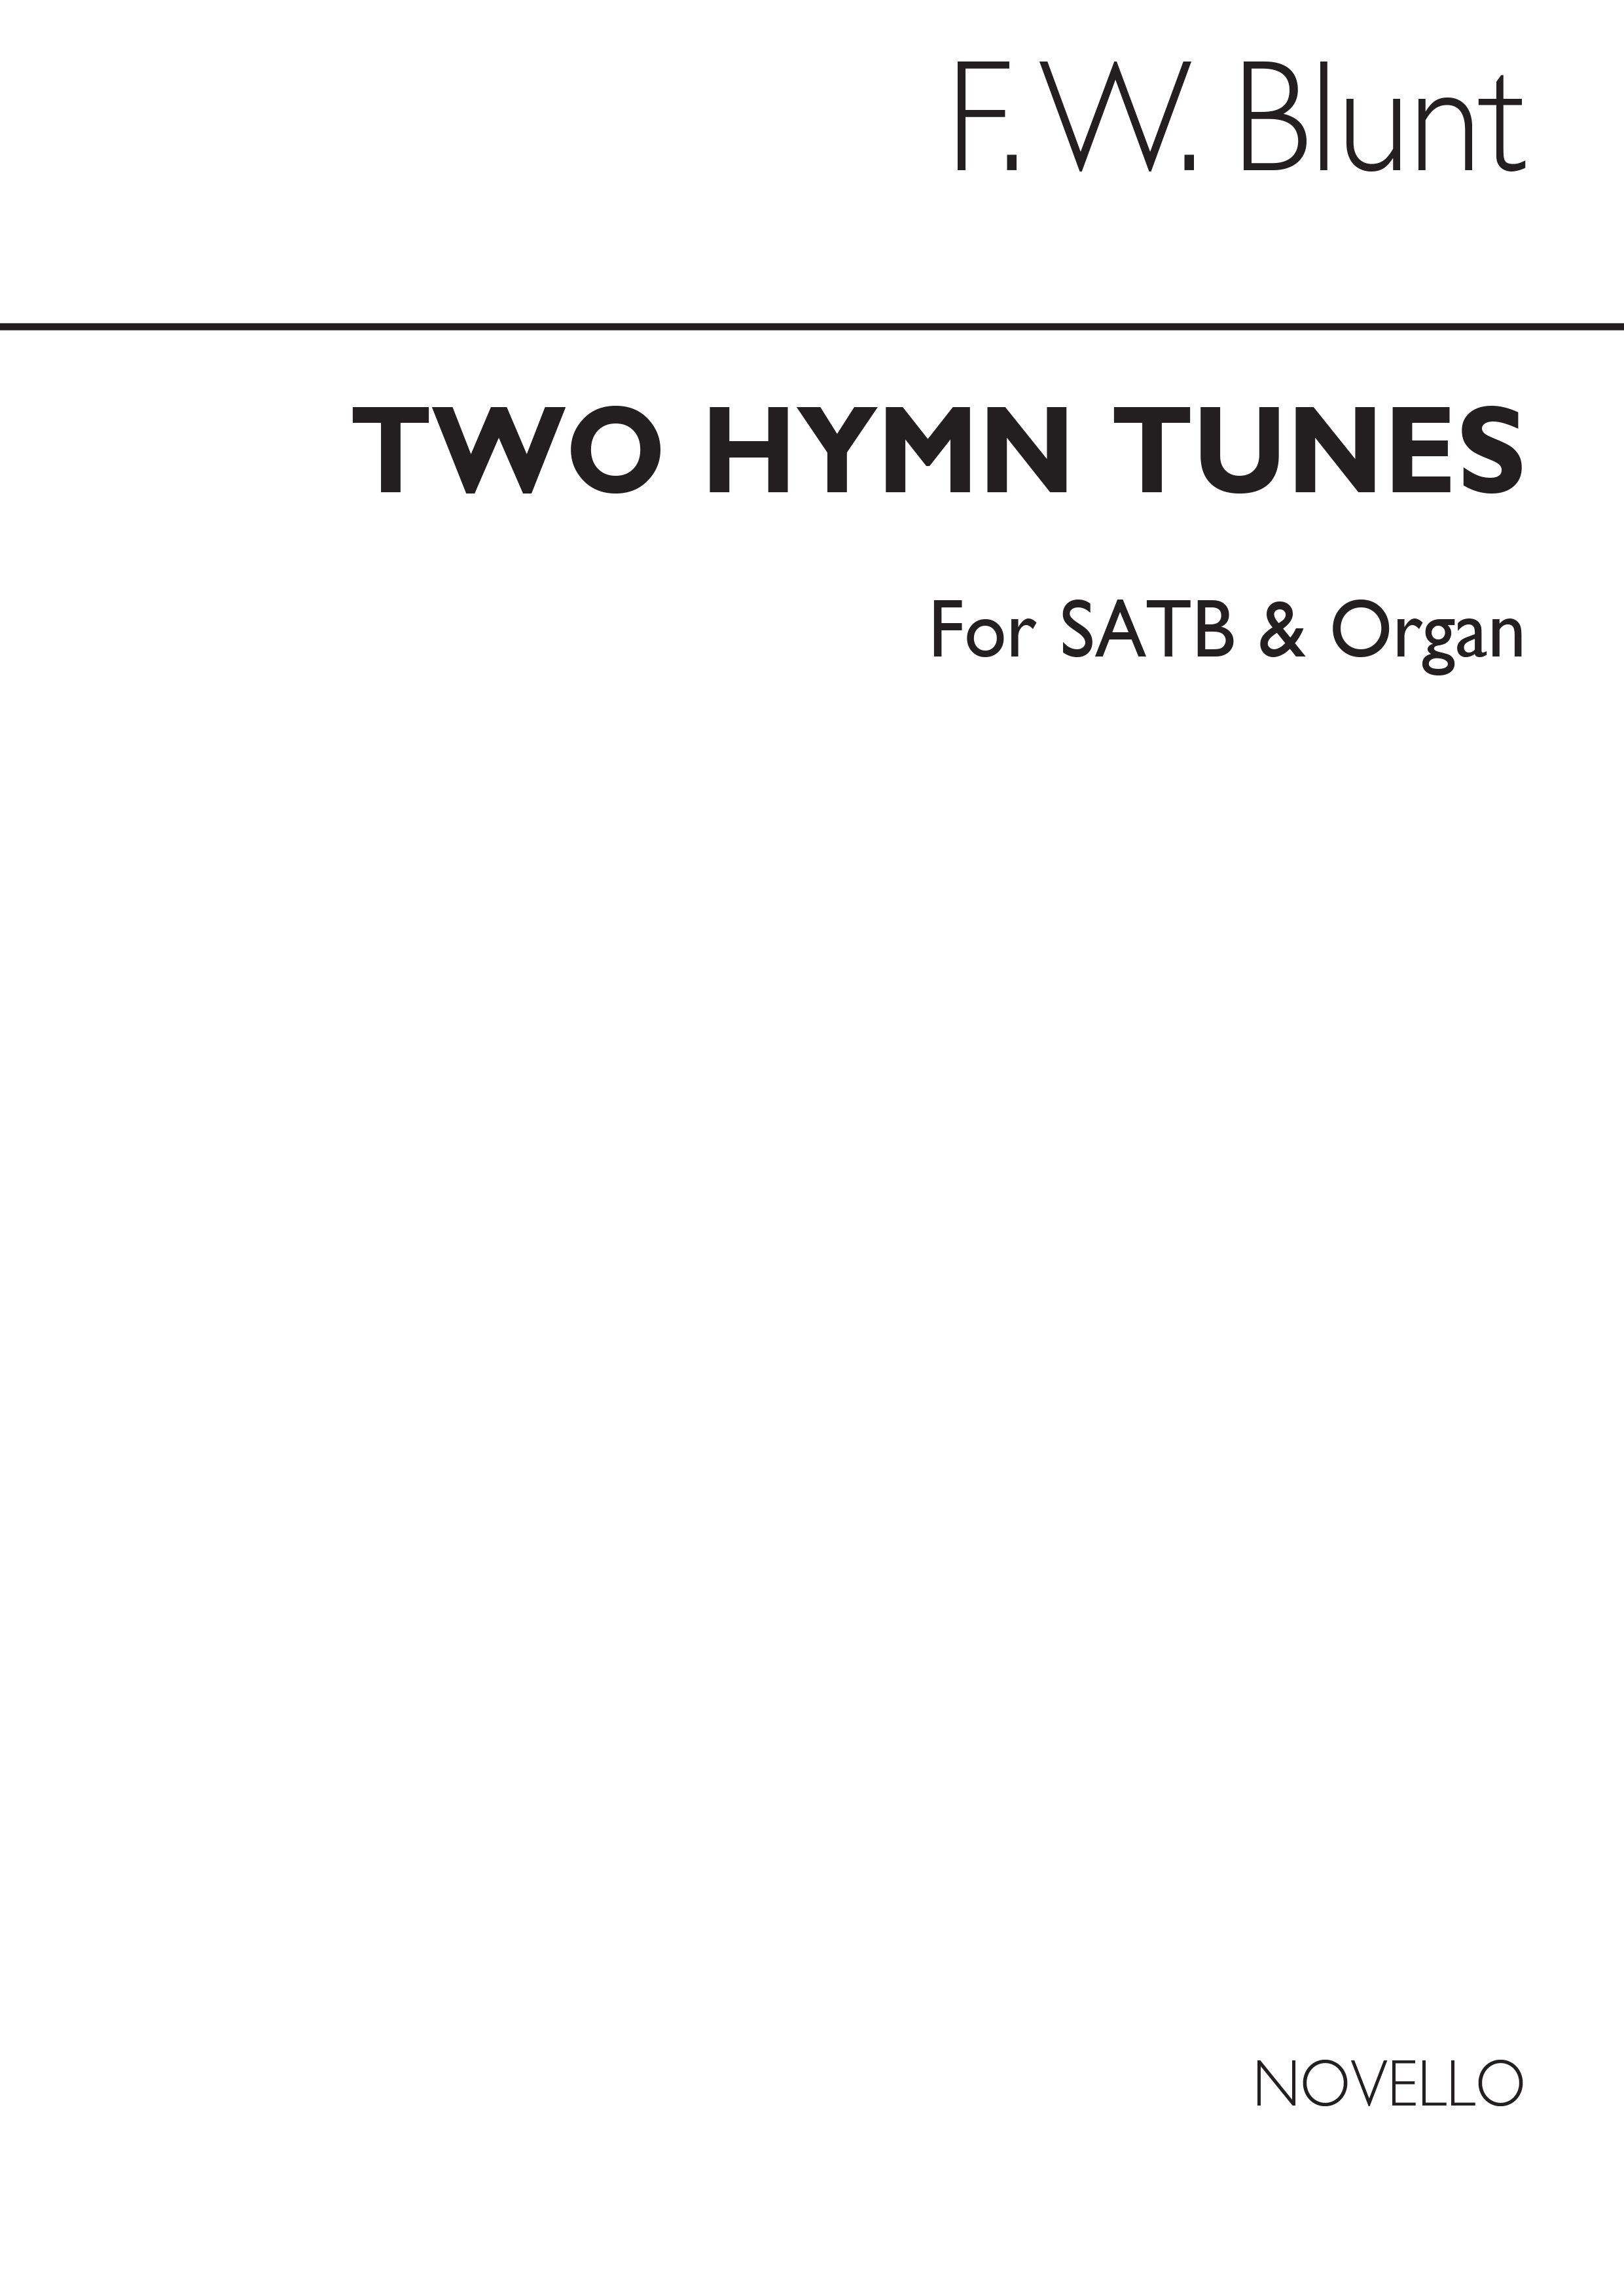 F.W. Blunt: Two Hymn Tunes (Lyndhurst/Art Thou Weary) Satb/Organ (No Words)